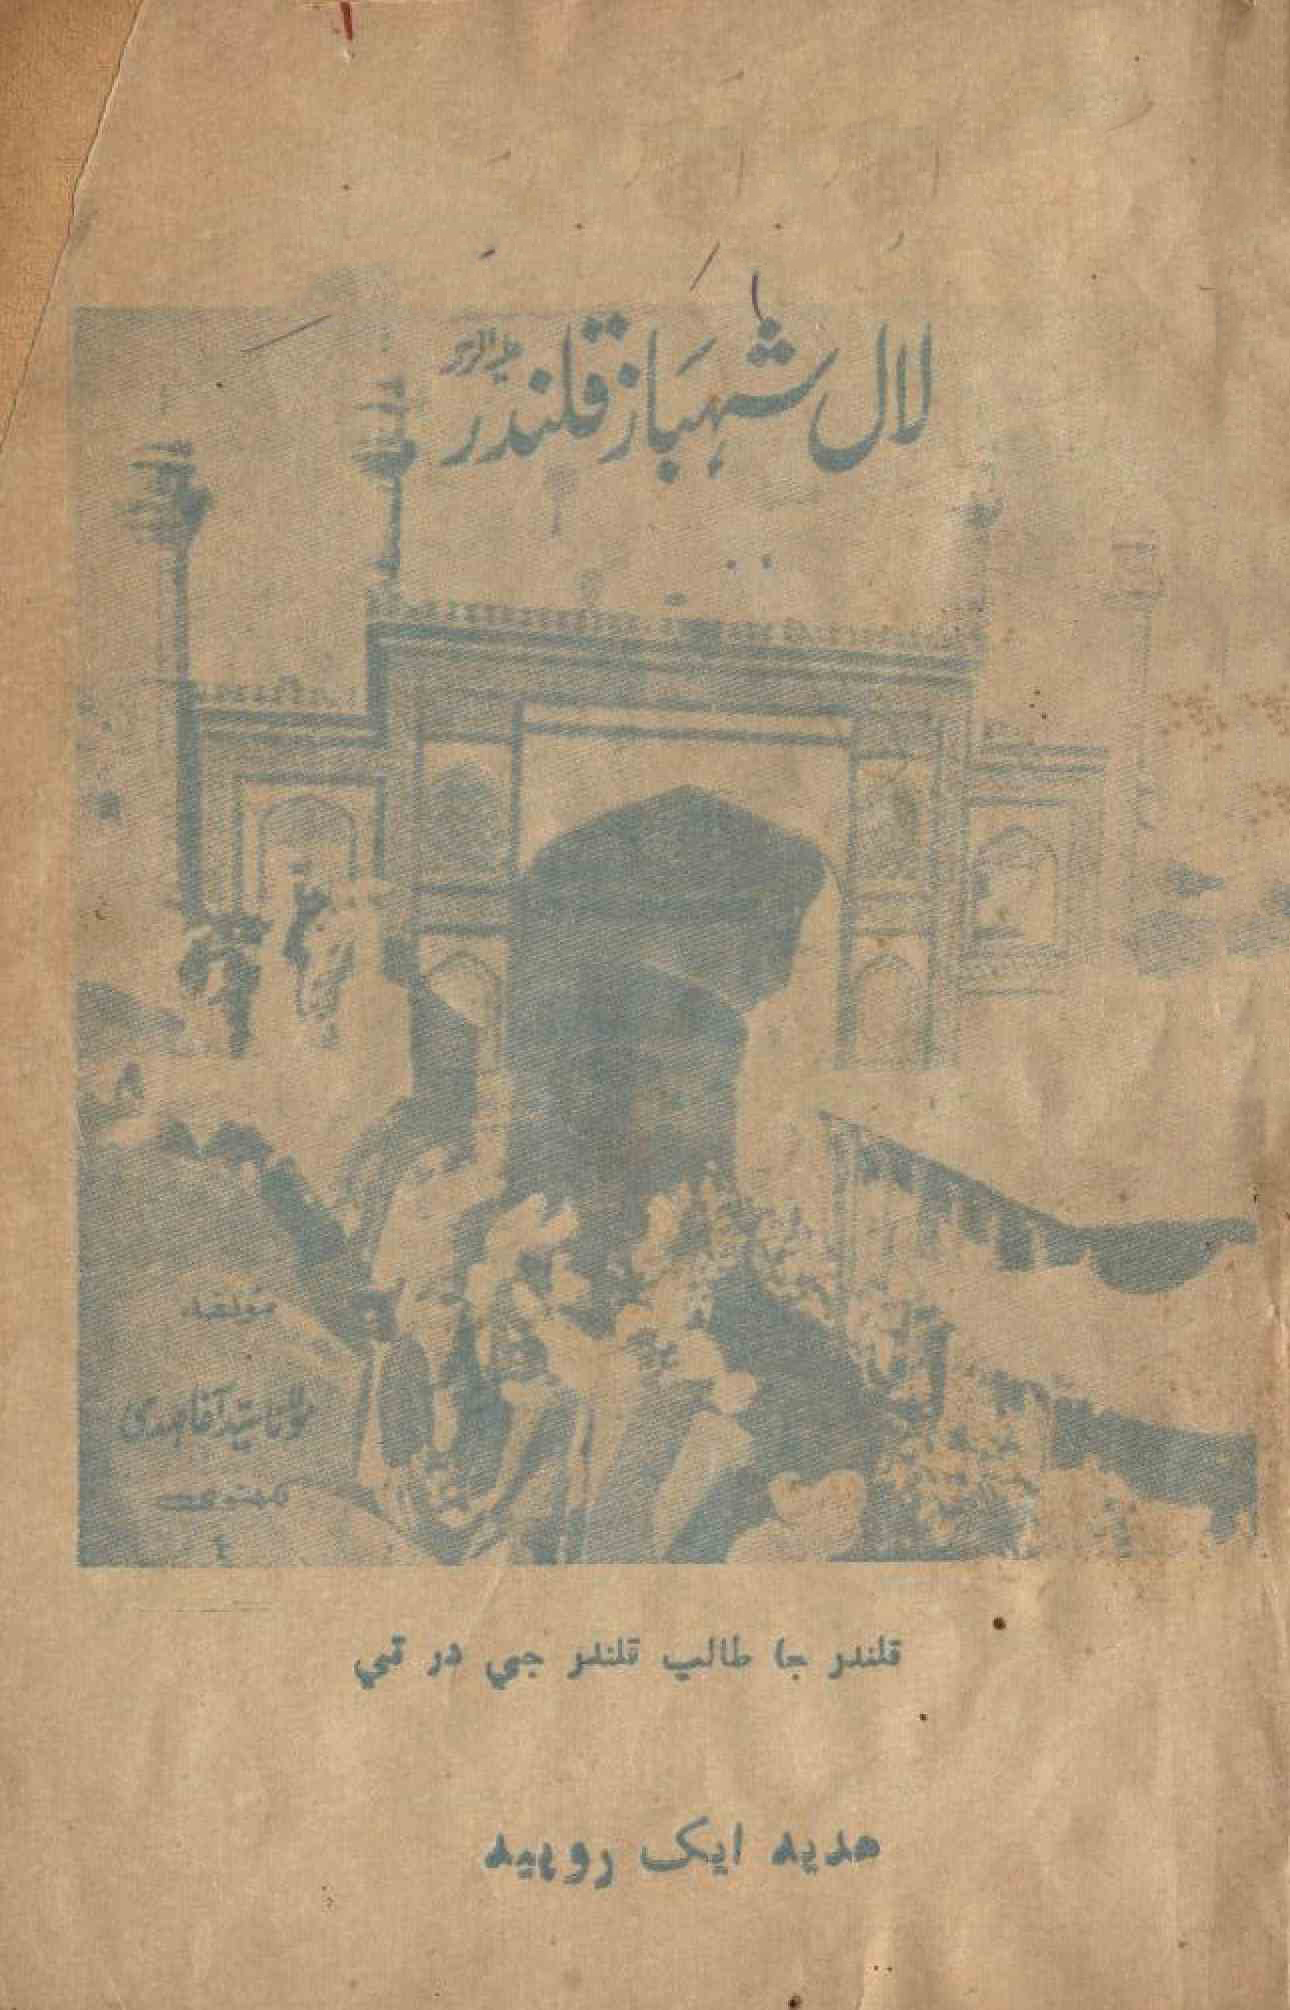 Lal Shahbaz Qalandar